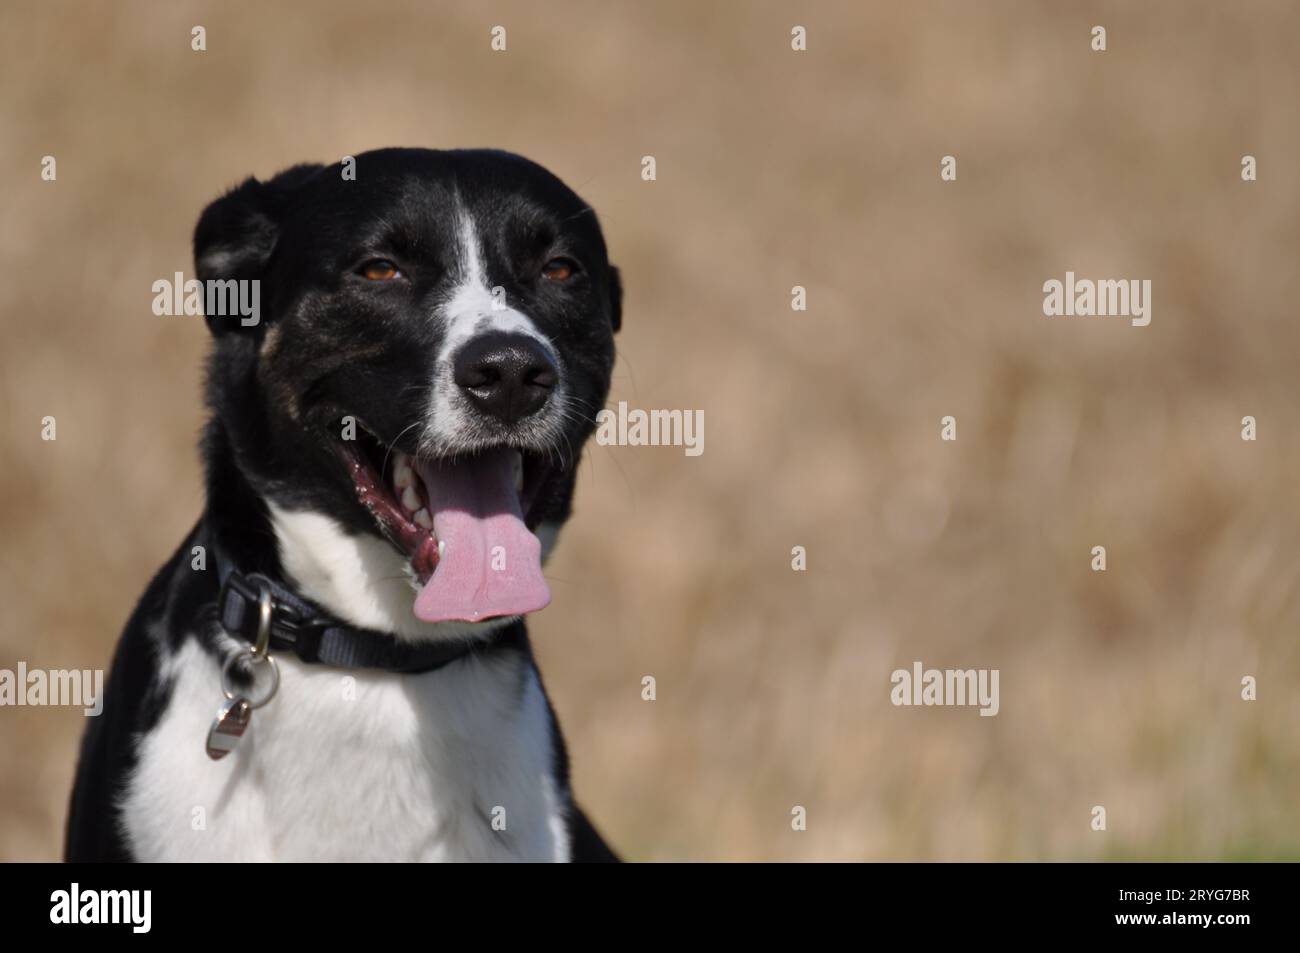 Cane di razza mista con grinelle di pelliccia bianca e nera alla telecamera Foto Stock